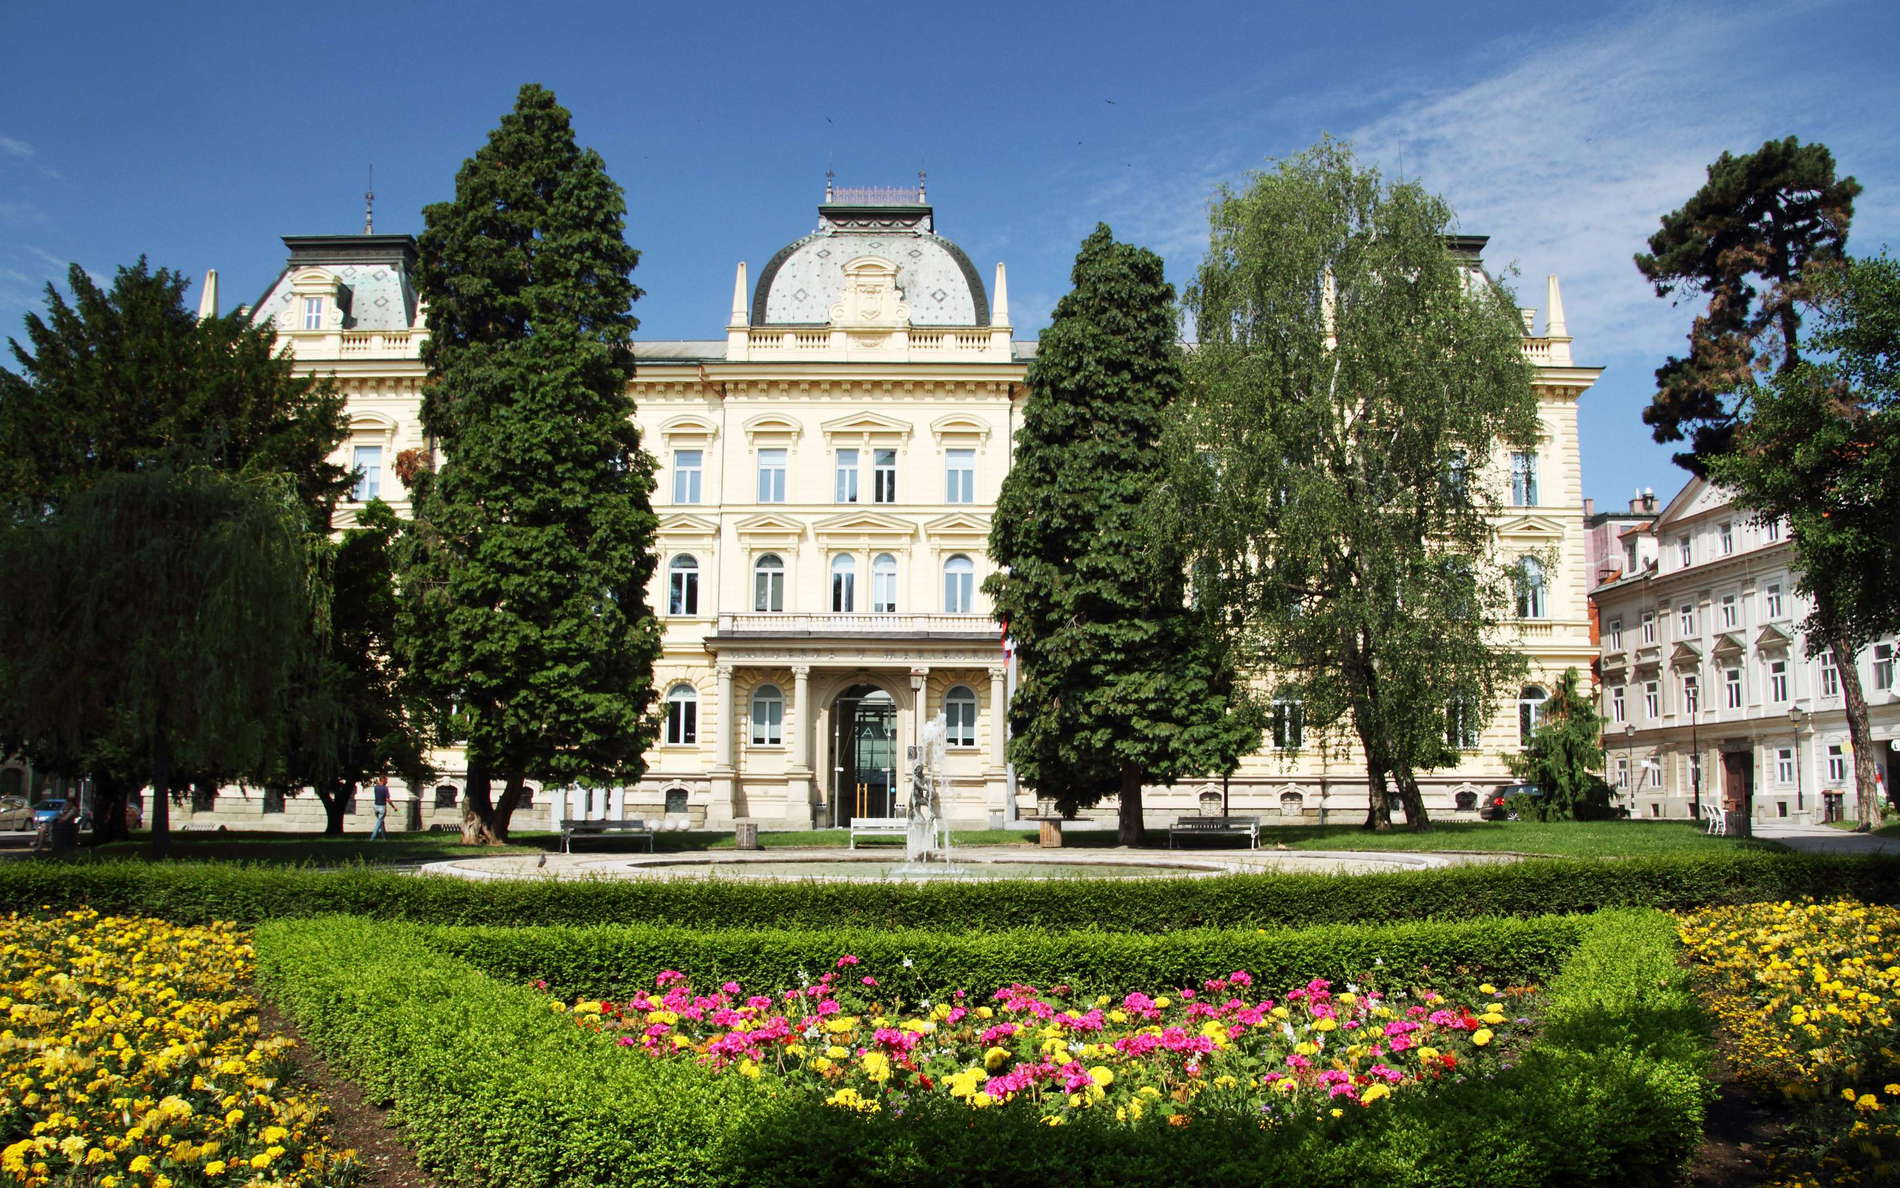 Maribor  |  University of Maribor